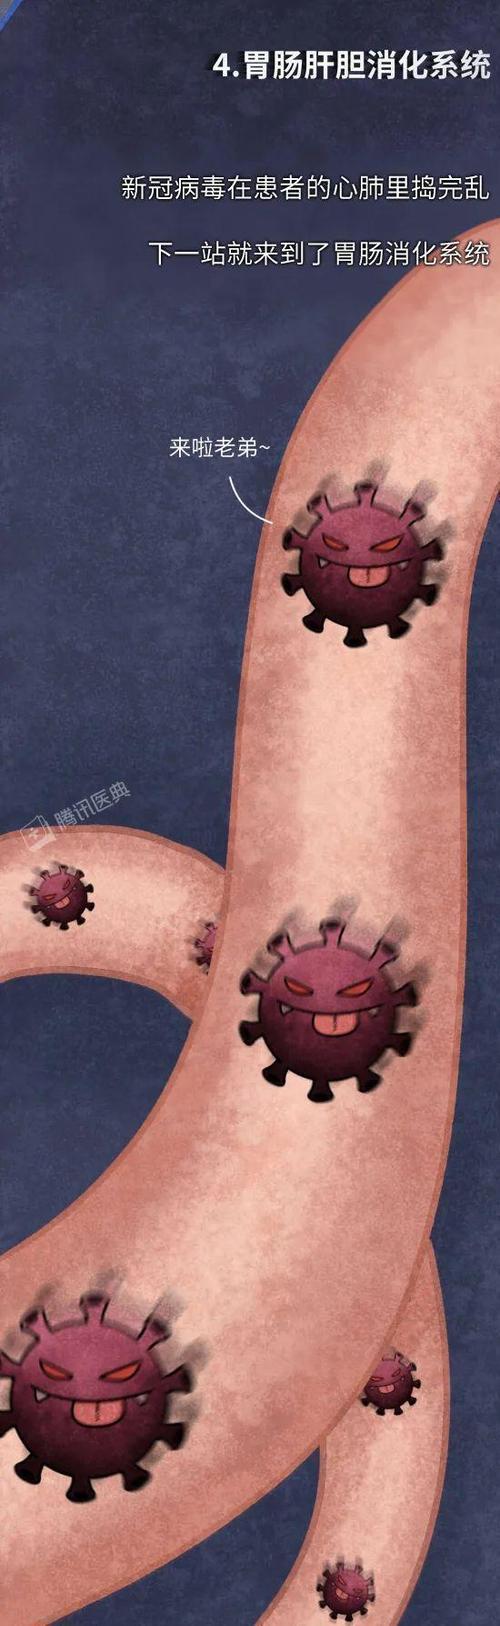 新型冠状病毒在25度能传染吗